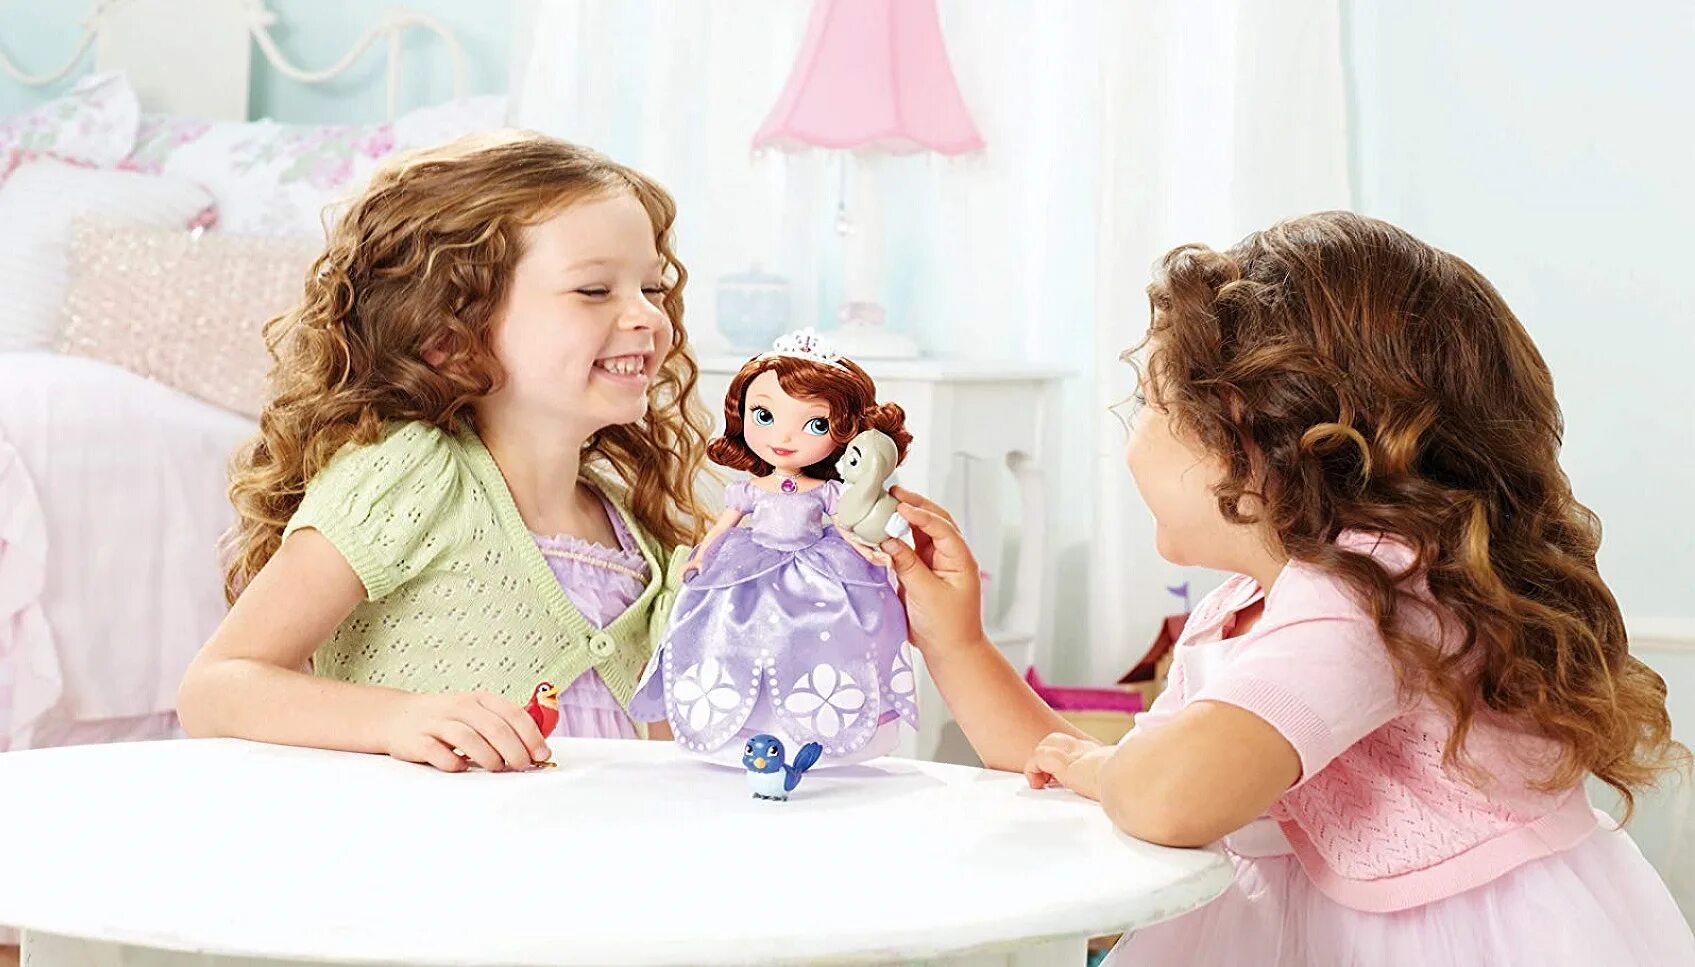 Куклы для девочек. Девочка с двумя куклами. Девочка играет в куклы. Девочки играющие в куклы. Картинка девочка с куклой